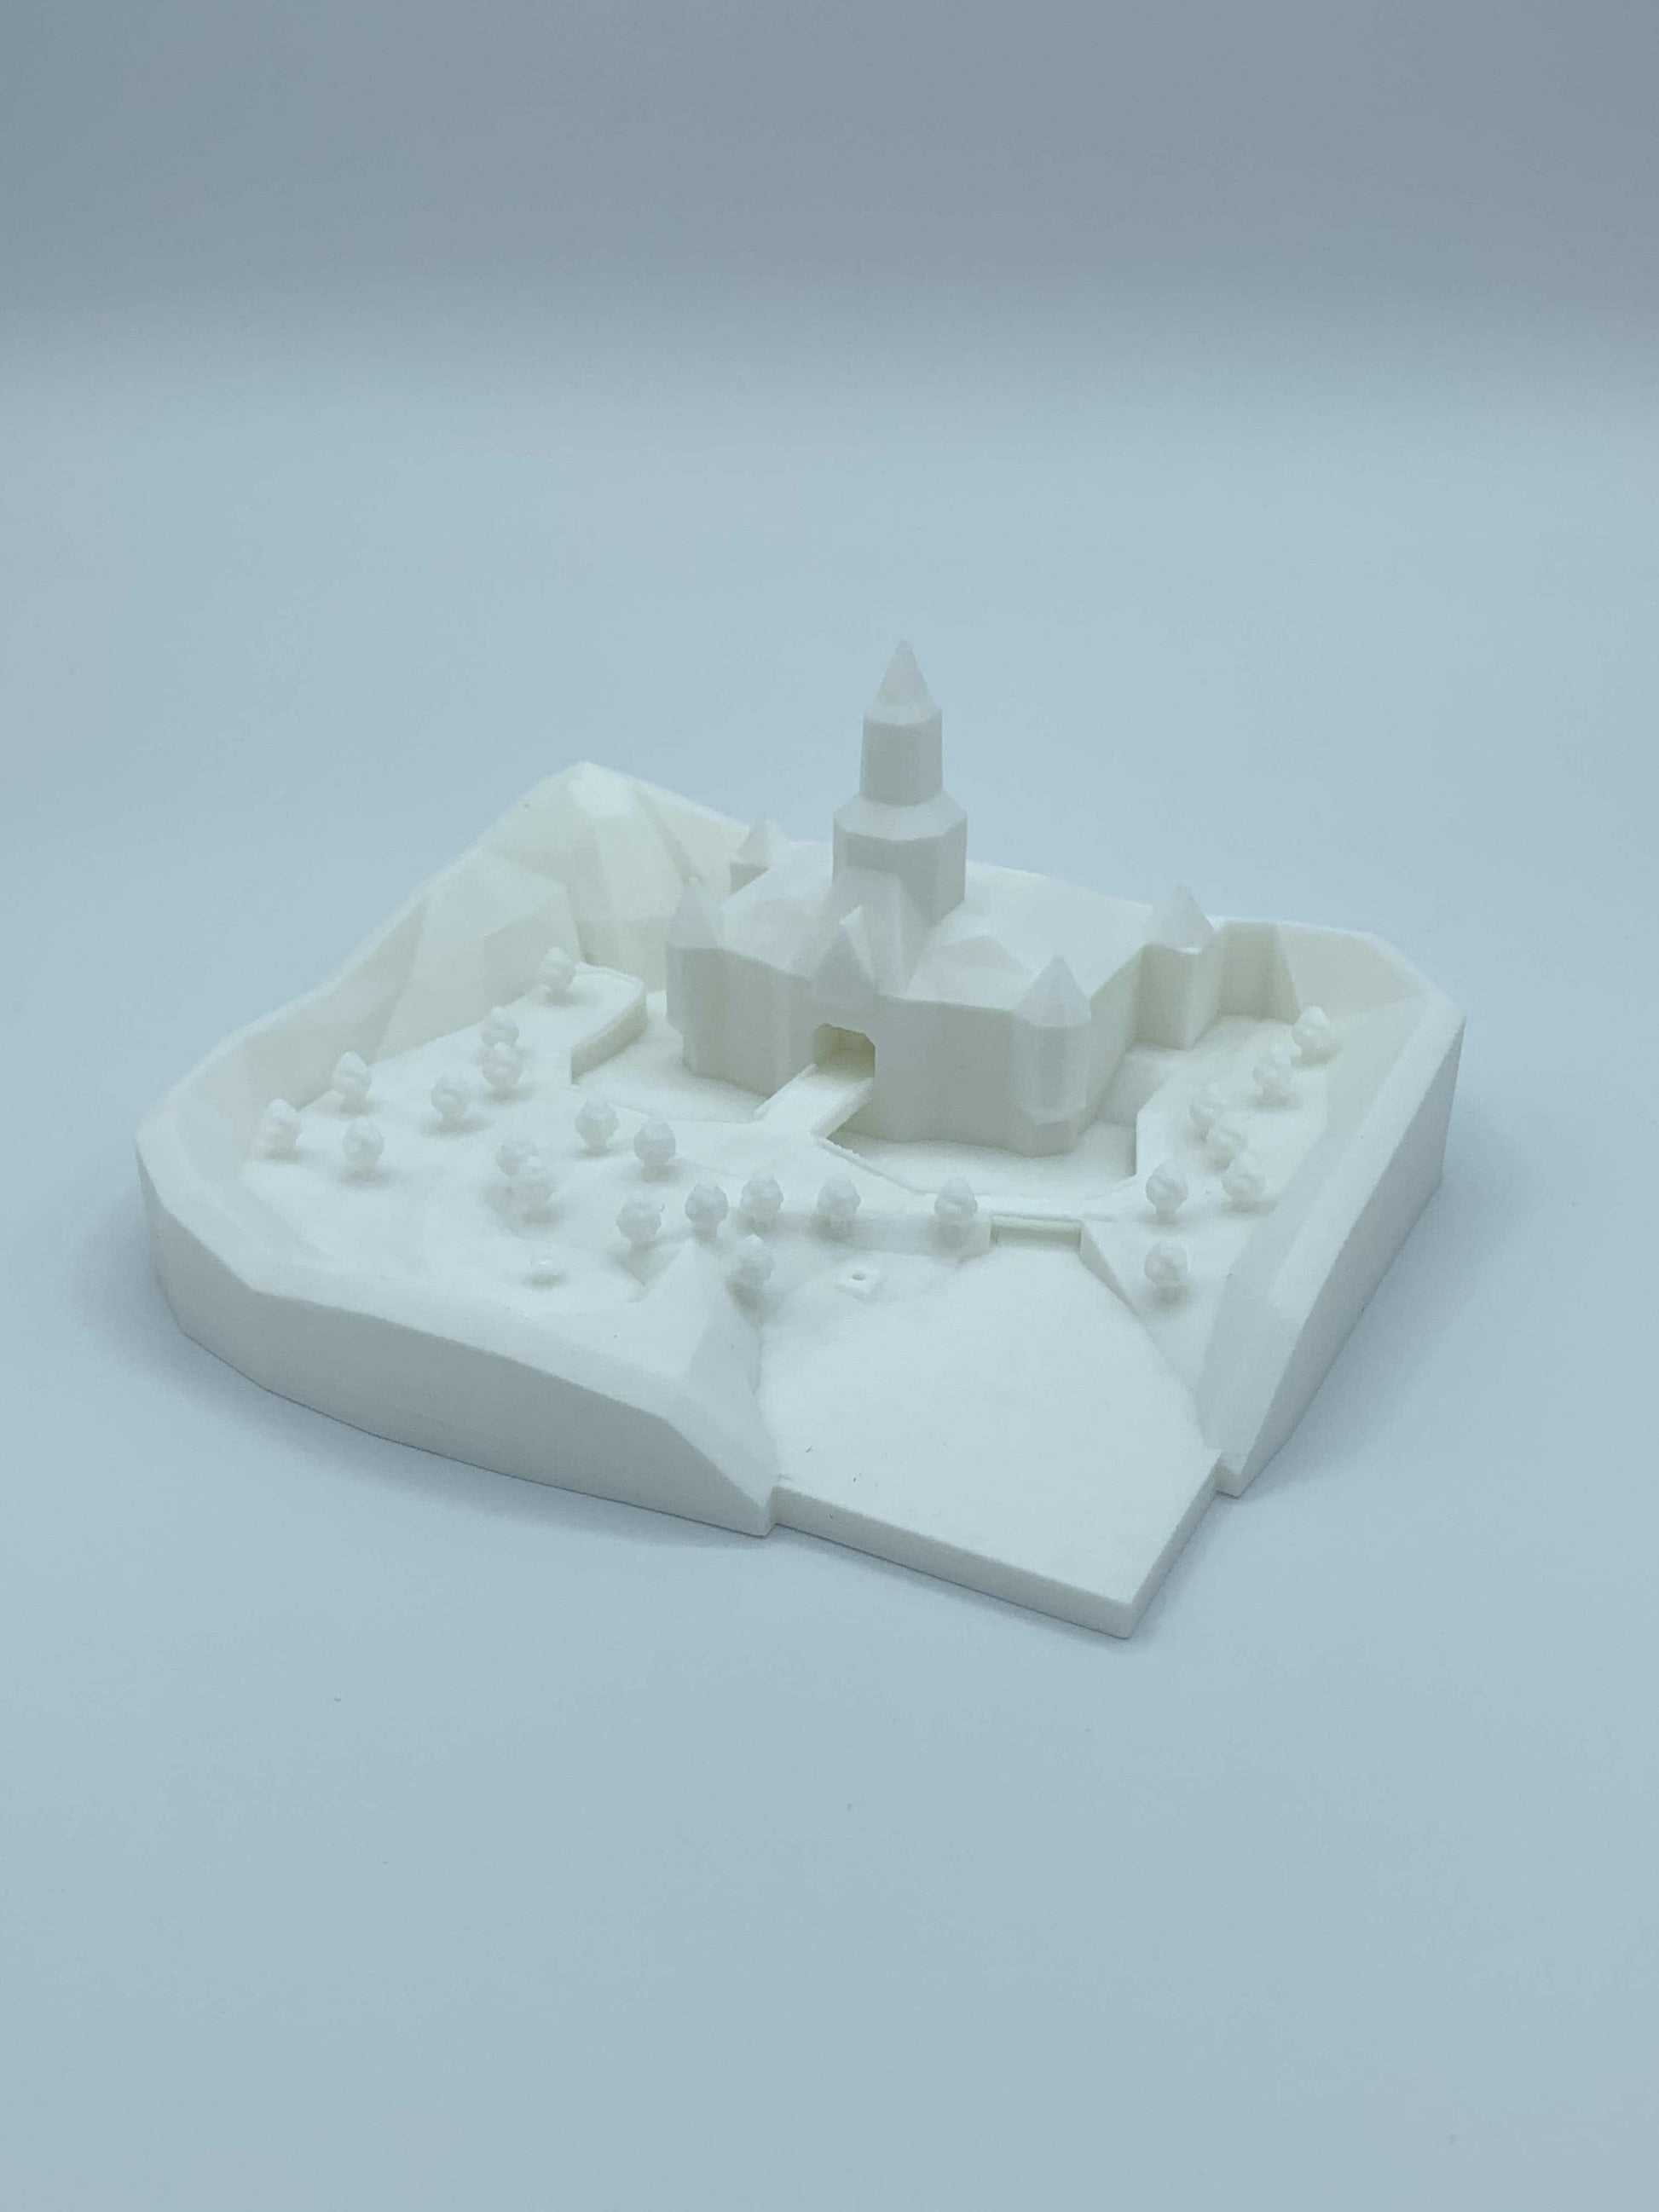 Peach's Castle N64 3D Printed Model